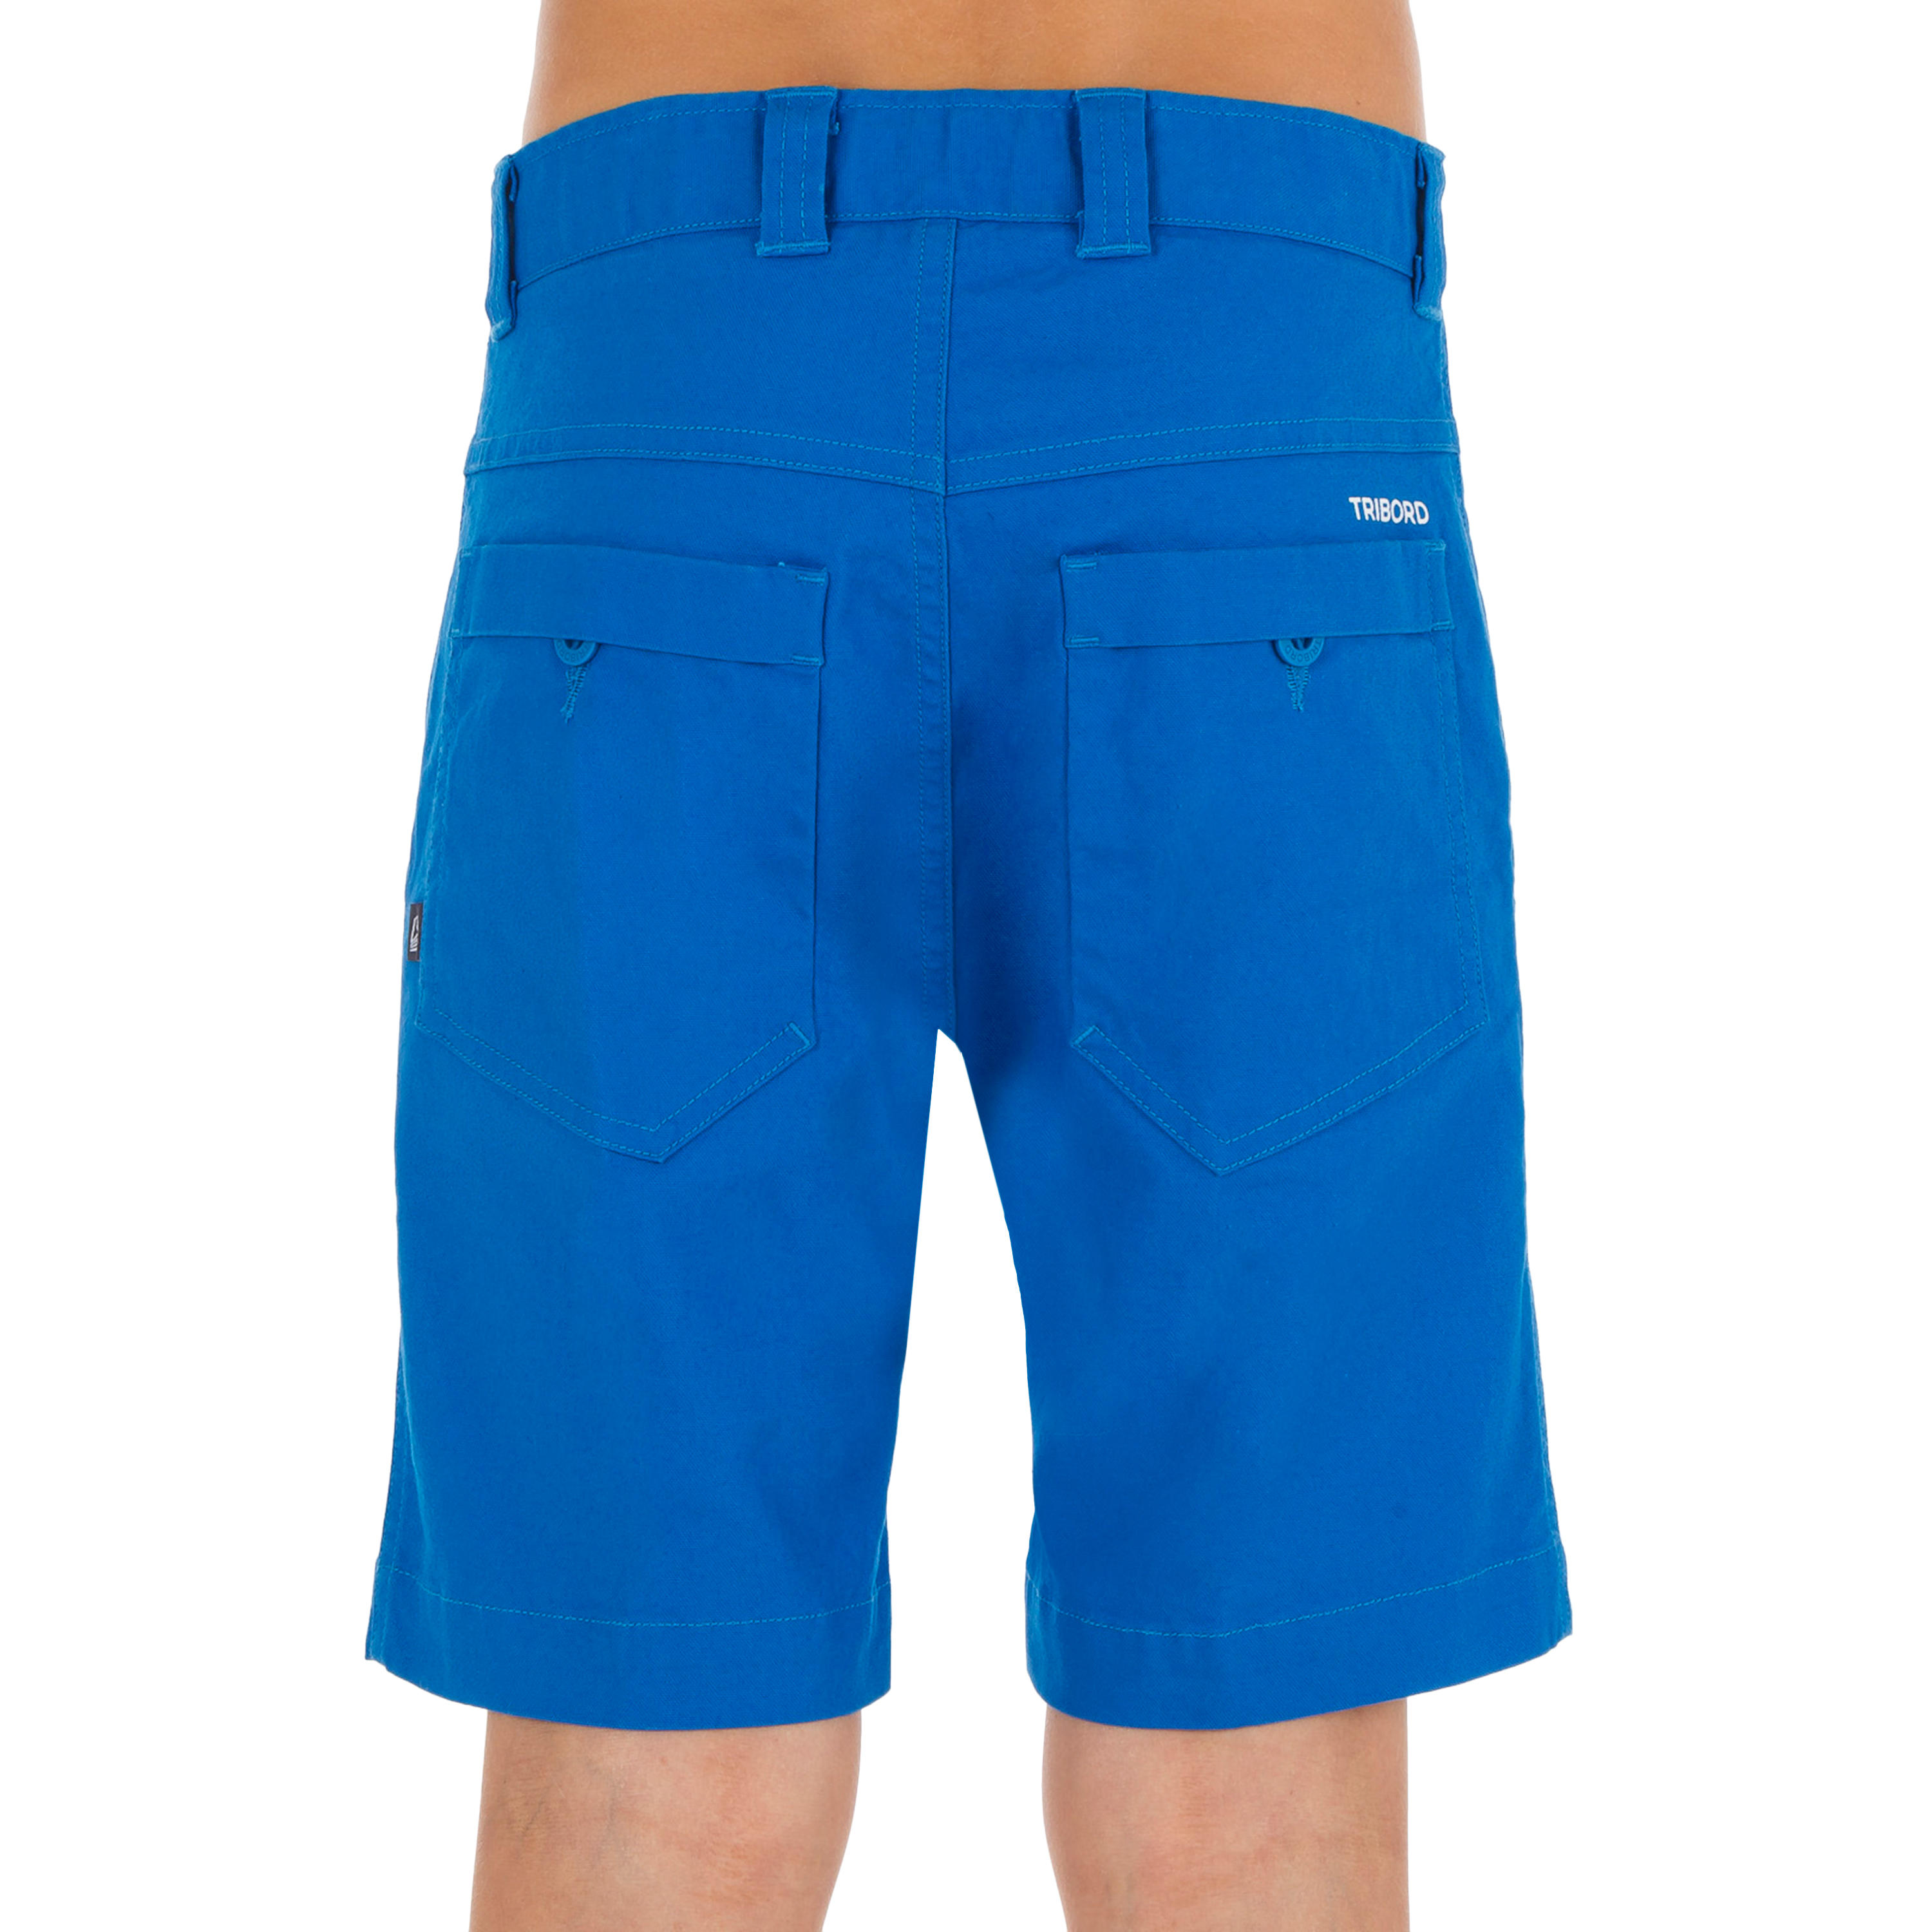 Boys’ sailing Bermuda shorts SAILING 100 - Vibrant blue 2/4